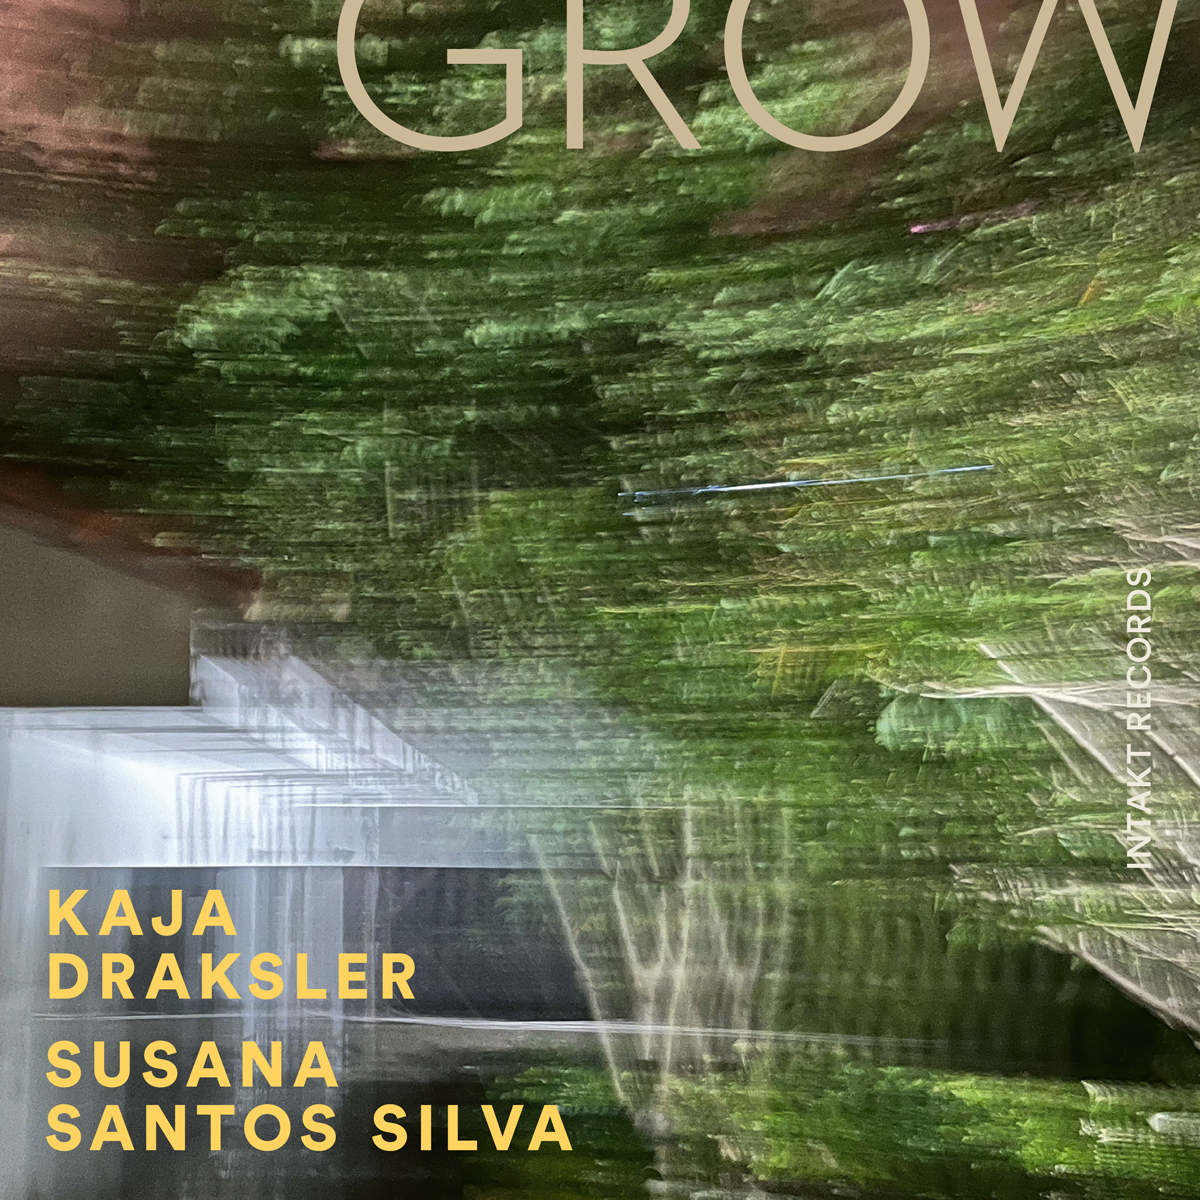 KAJA DRAKSLER – SUSANA SANTOS SILVA
GROW Intakt Records CD 391